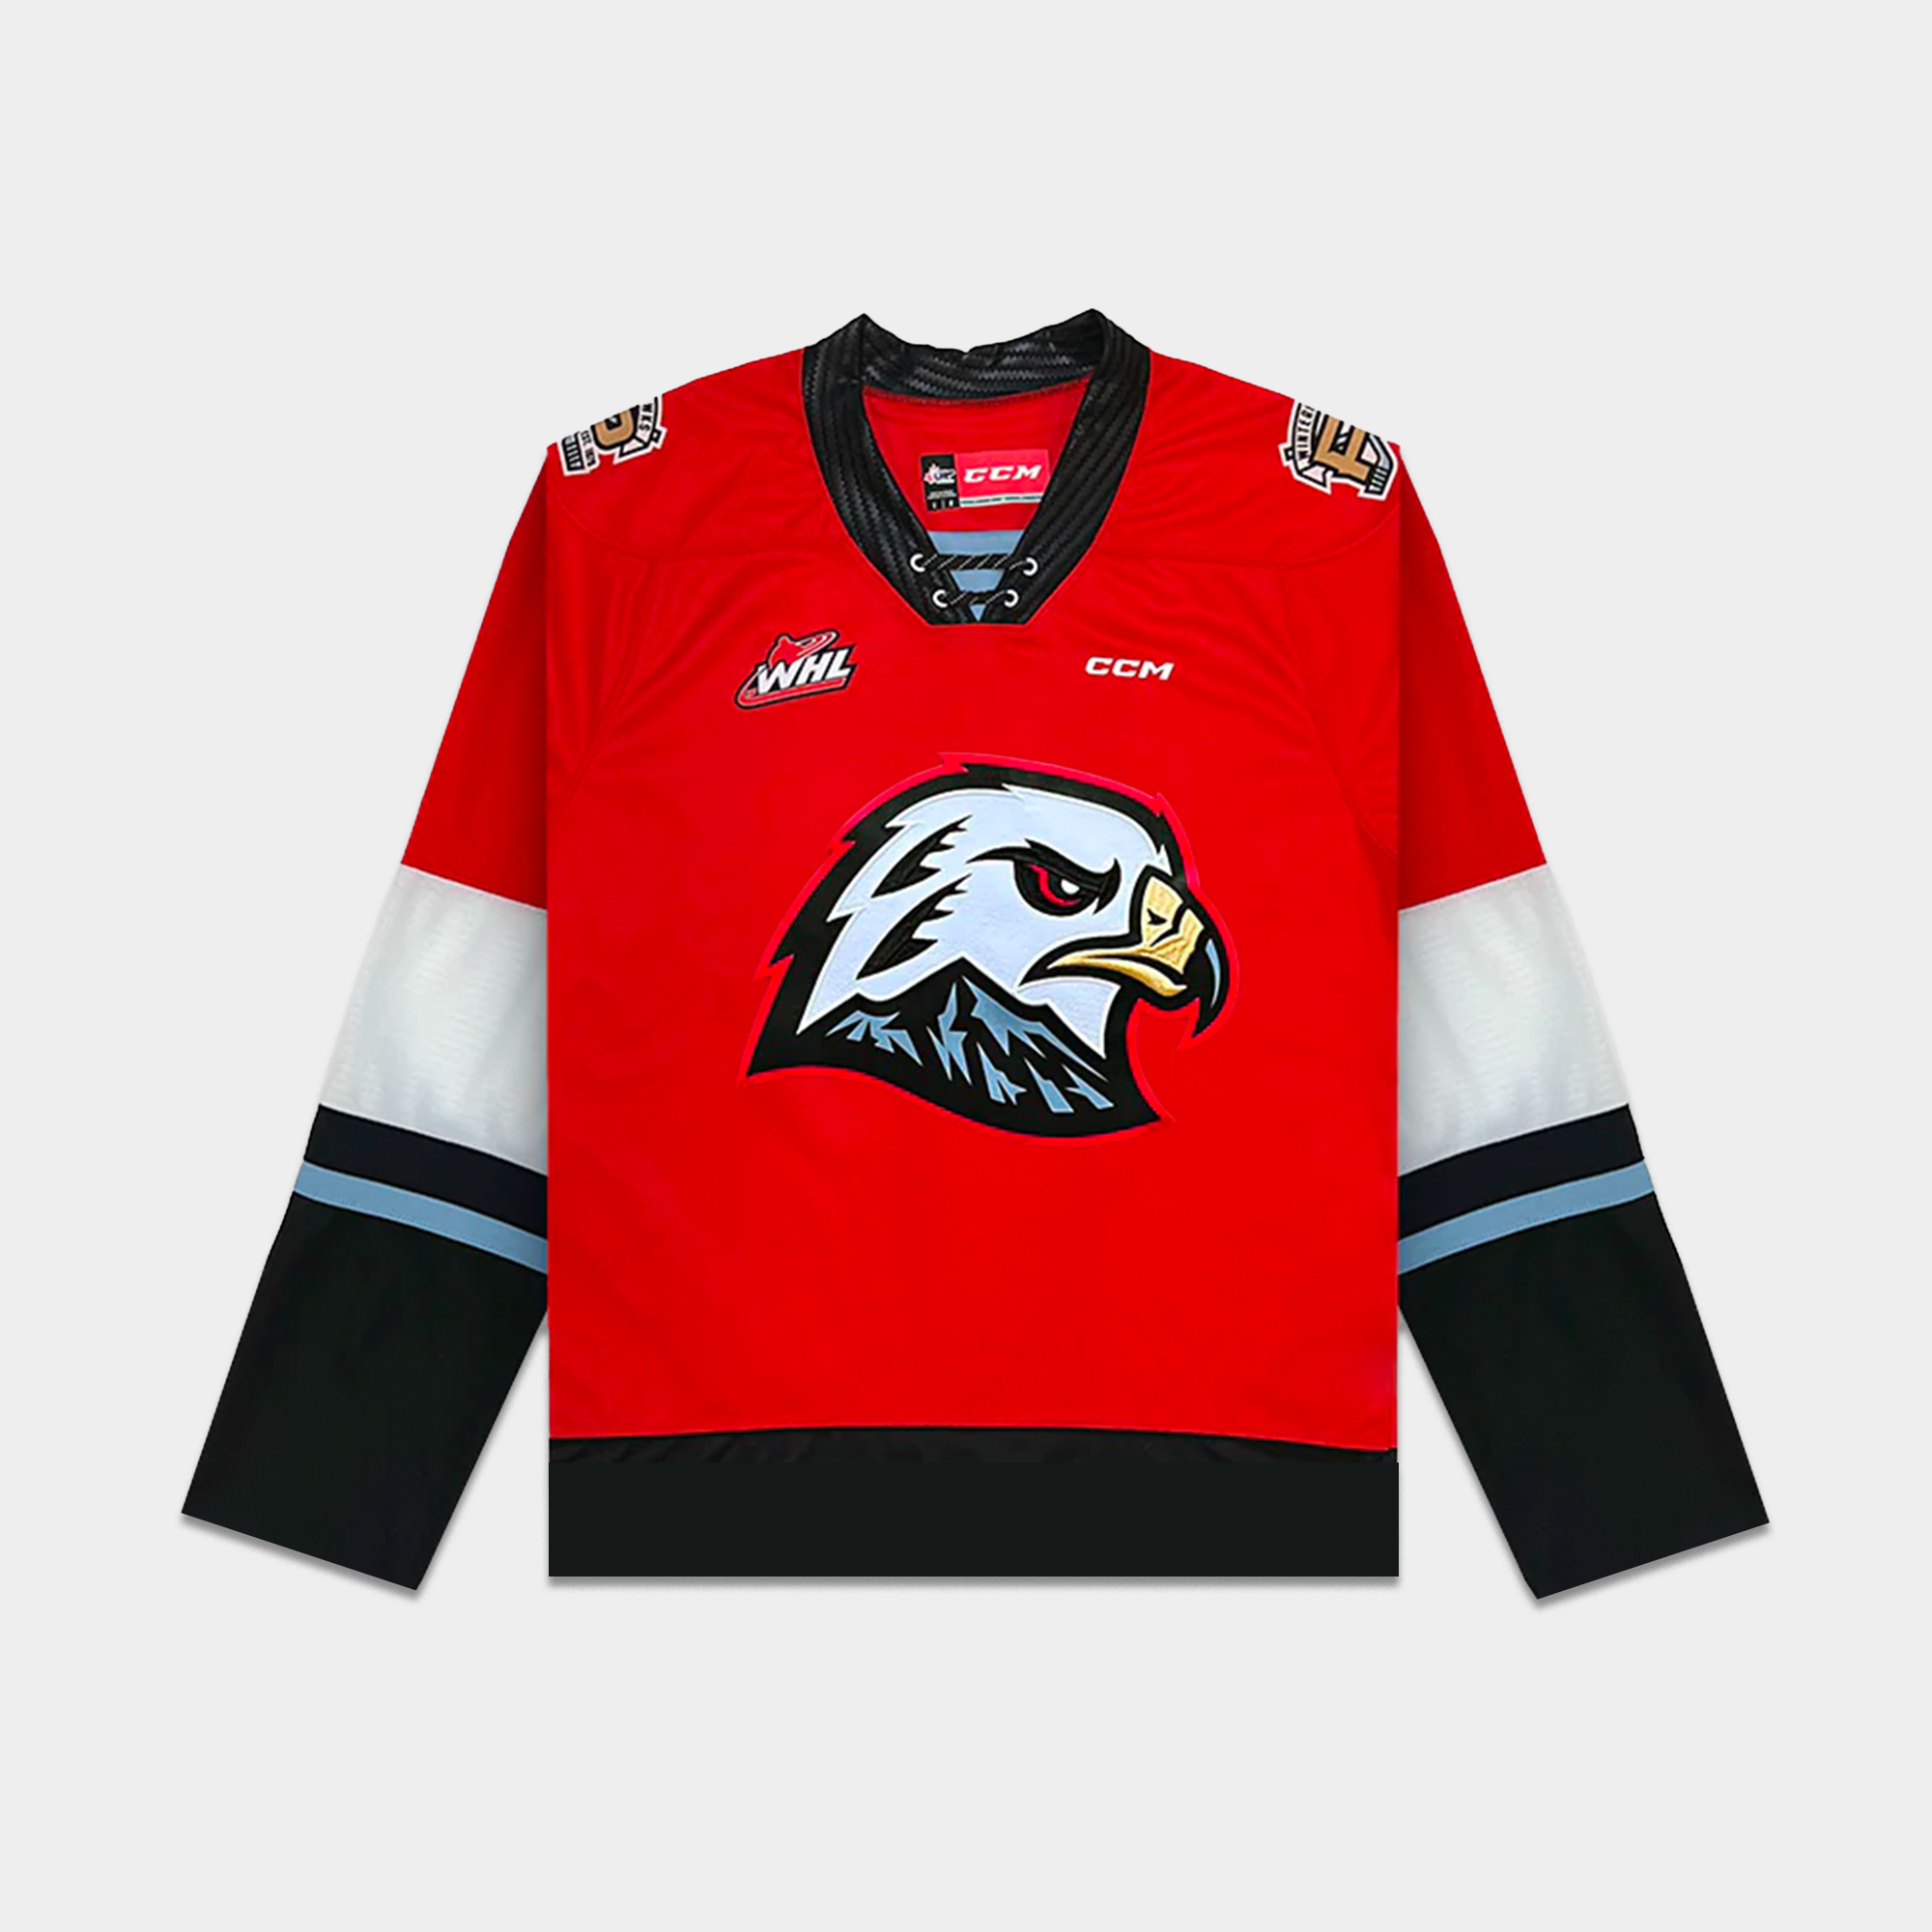 rappers wearing hockey jerseys on X: .@MacMiller wearing a Mighty Ducks  jersey.  / X